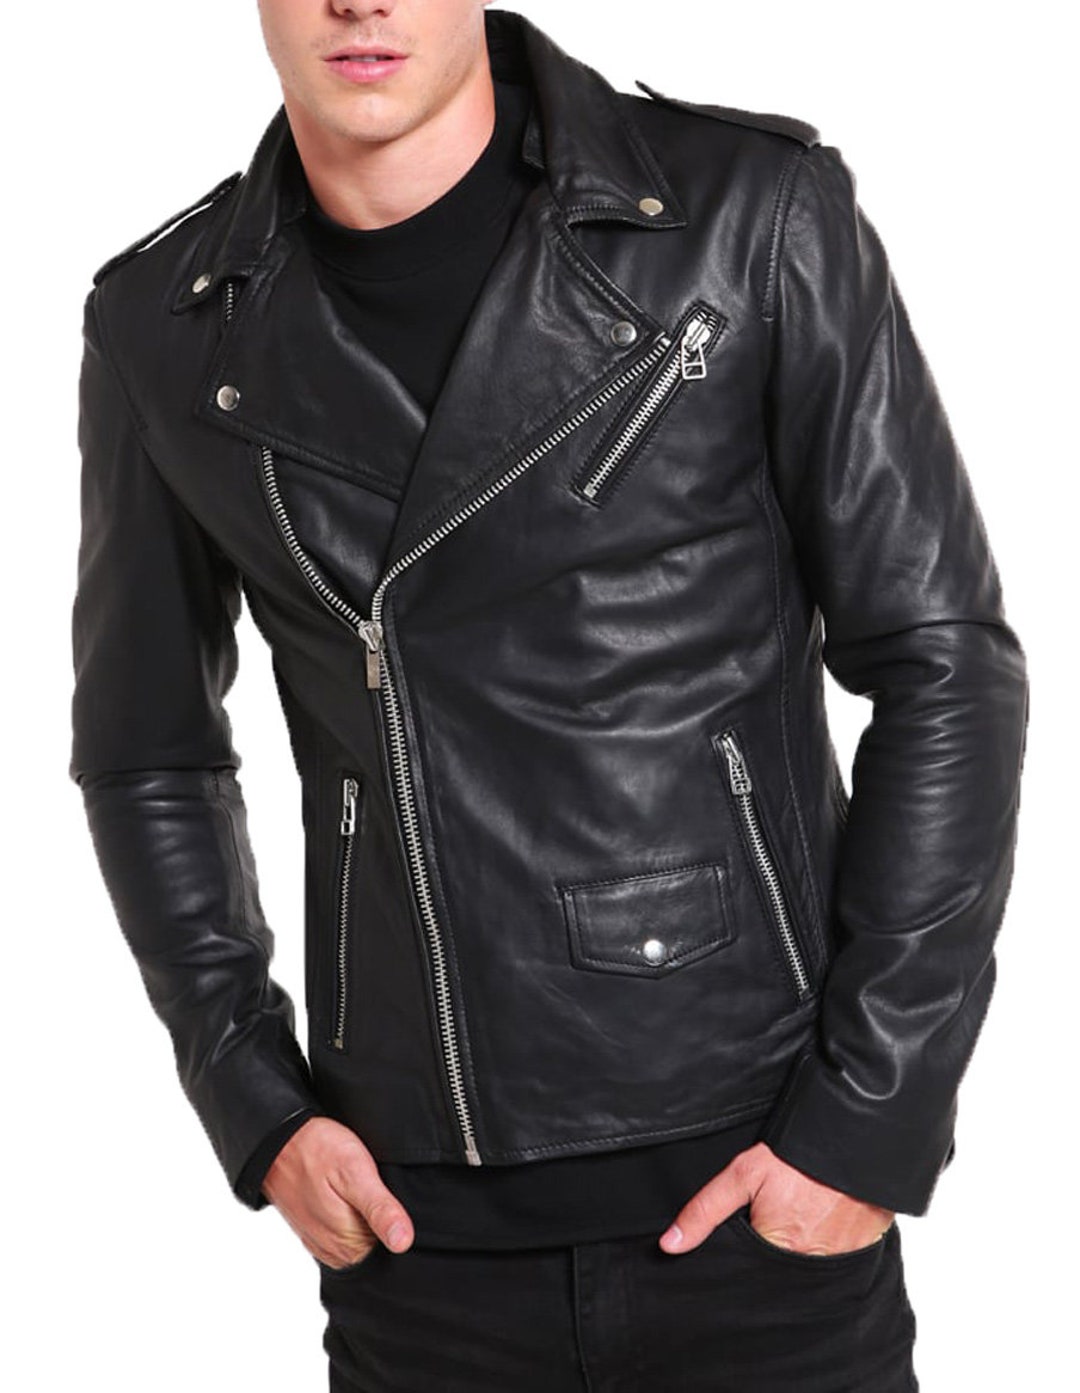 High Glamor Men's Leather Jacket Stylish Handmade Motorcycle Bomber ...